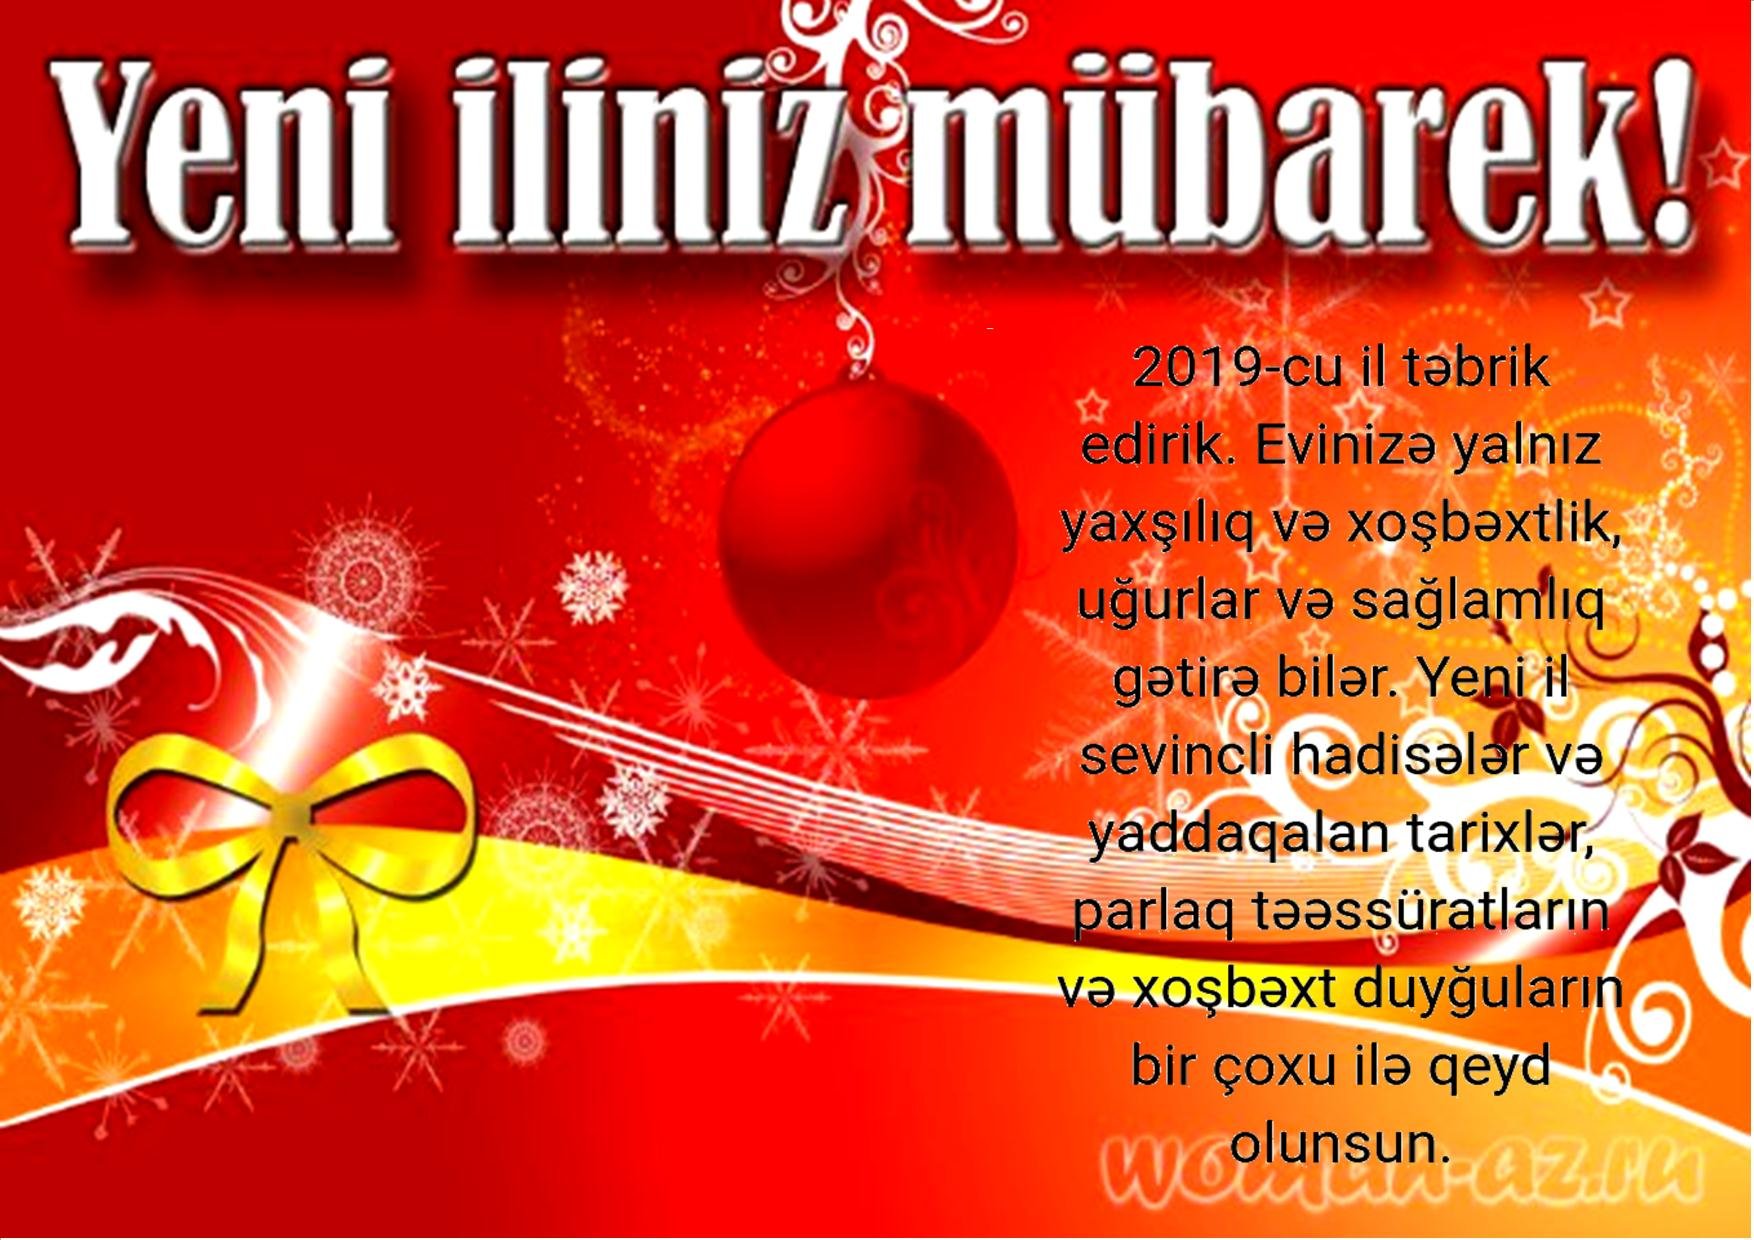 Видео поздравления на азербайджанском языке. Поздравление с новым годом на азербайджанском языке. Поздравление с новым годом на турецком языке открытки. Поздравит на турецком с новым годом. Поздравление с наступающим новым годом на азербайджанском языке.